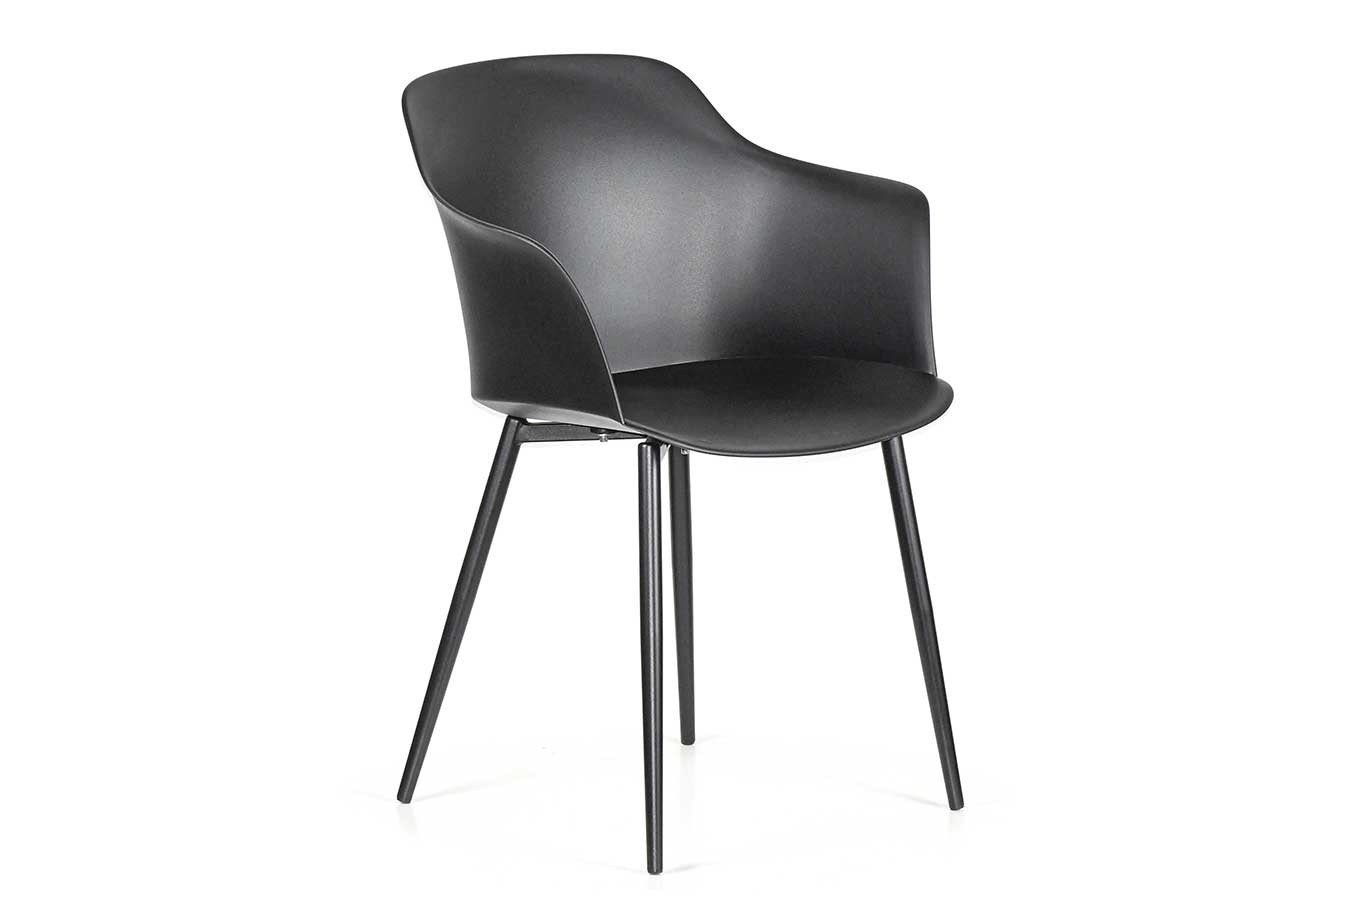 daslagerhaus living Stuhl italienischer Designchair Blanchet mit Armlehne sc schwarz pulver